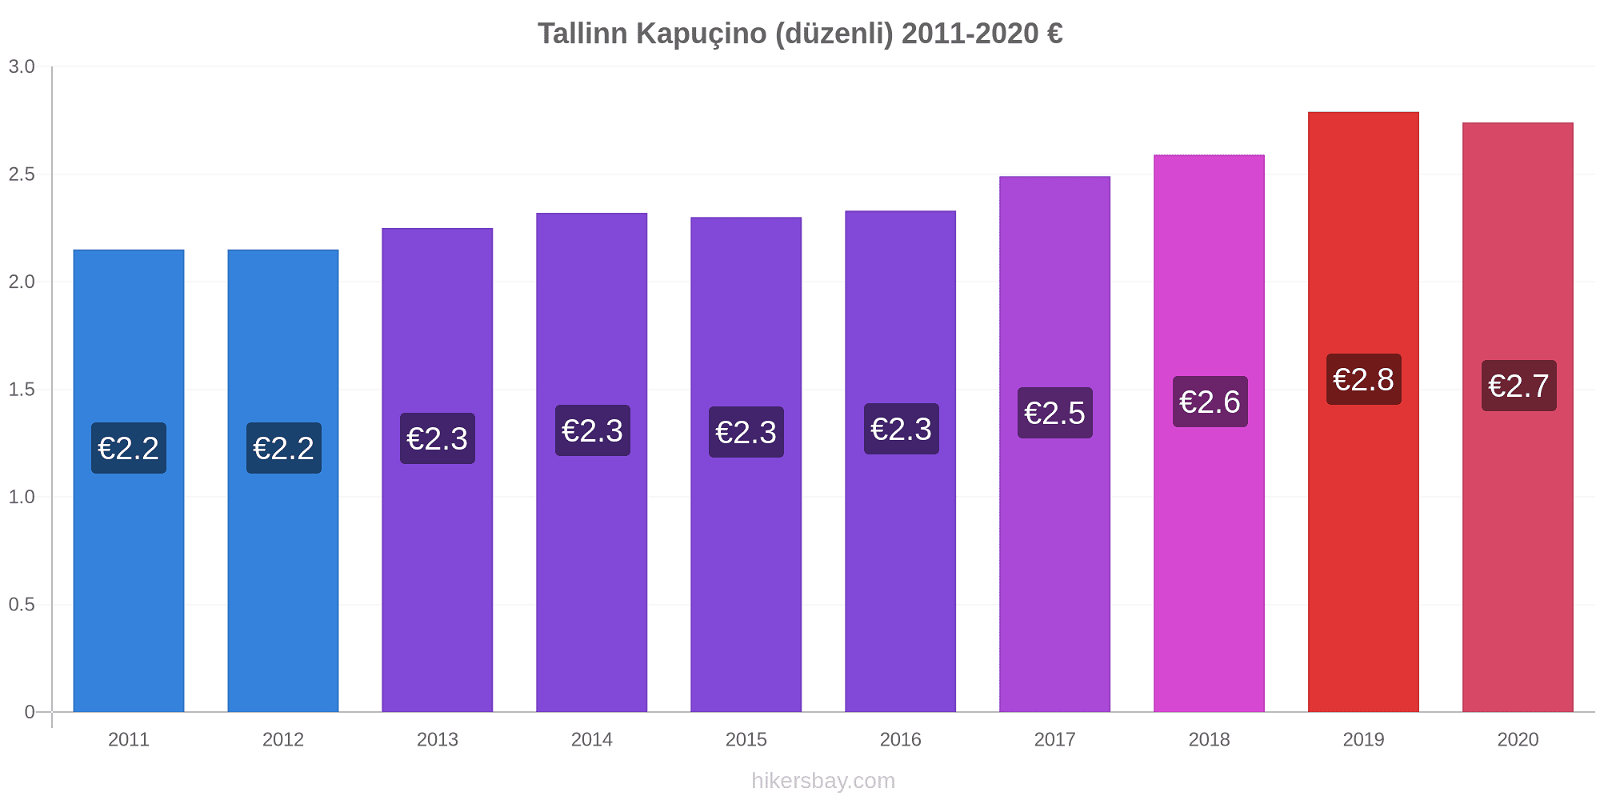 Tallinn fiyat değişiklikleri Kapuçino (düzenli) hikersbay.com